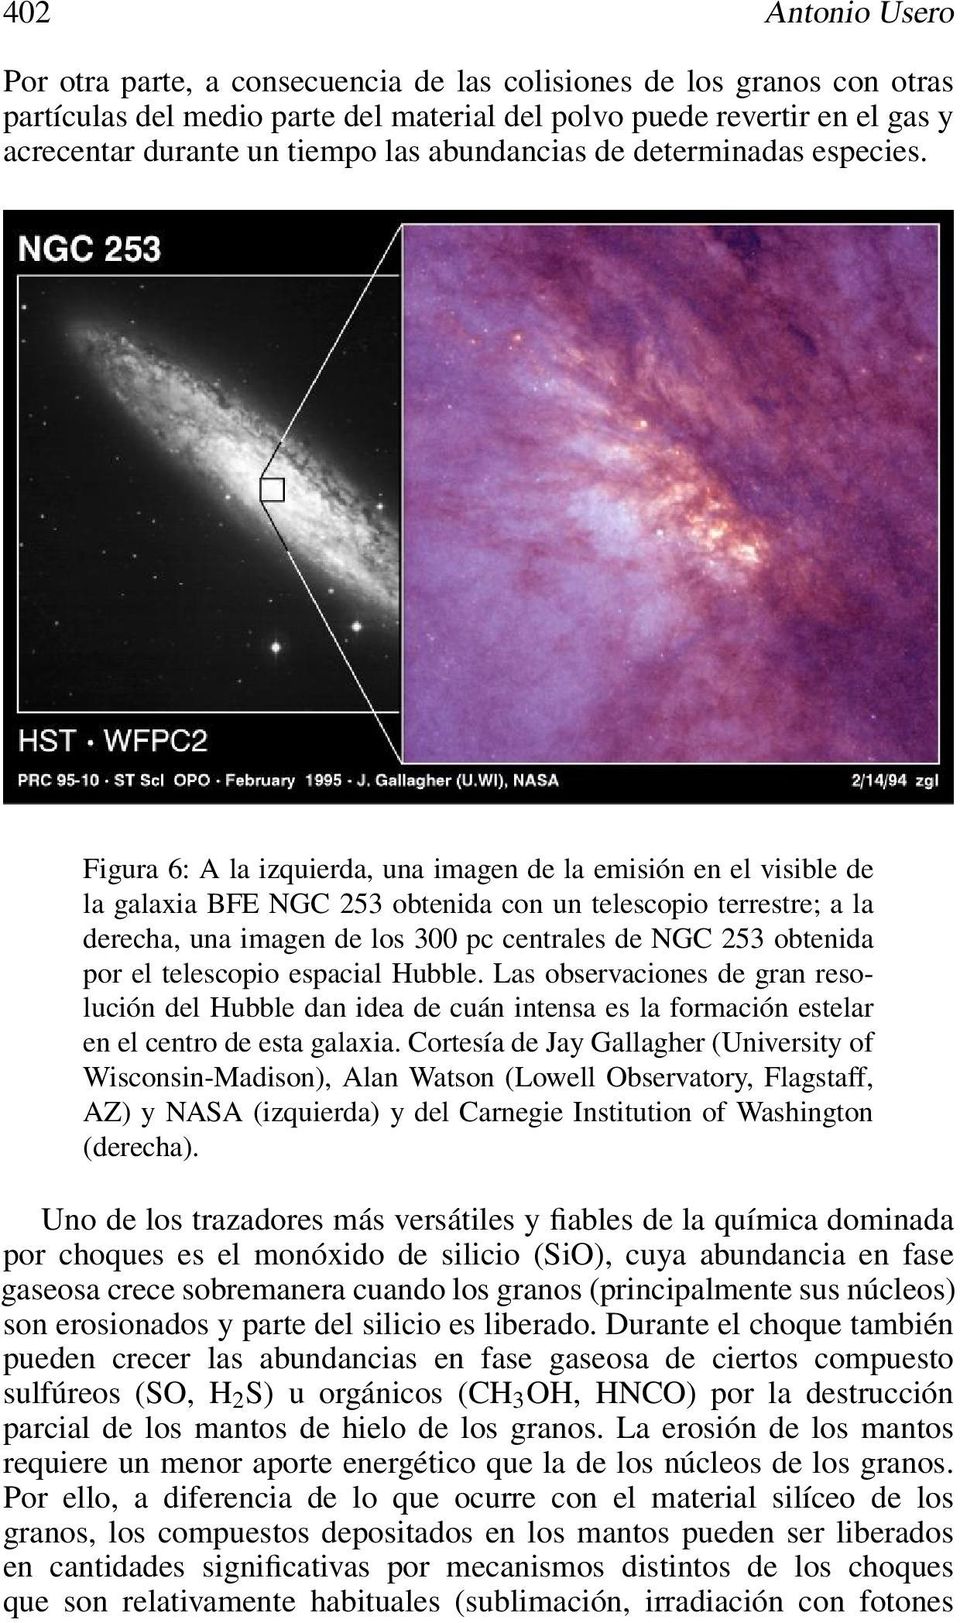 Figura 6: A la izquierda, una imagen de la emisión en el visible de la galaxia BFE NGC 253 obtenida con un telescopio terrestre; a la derecha, una imagen de los 300 pc centrales de NGC 253 obtenida